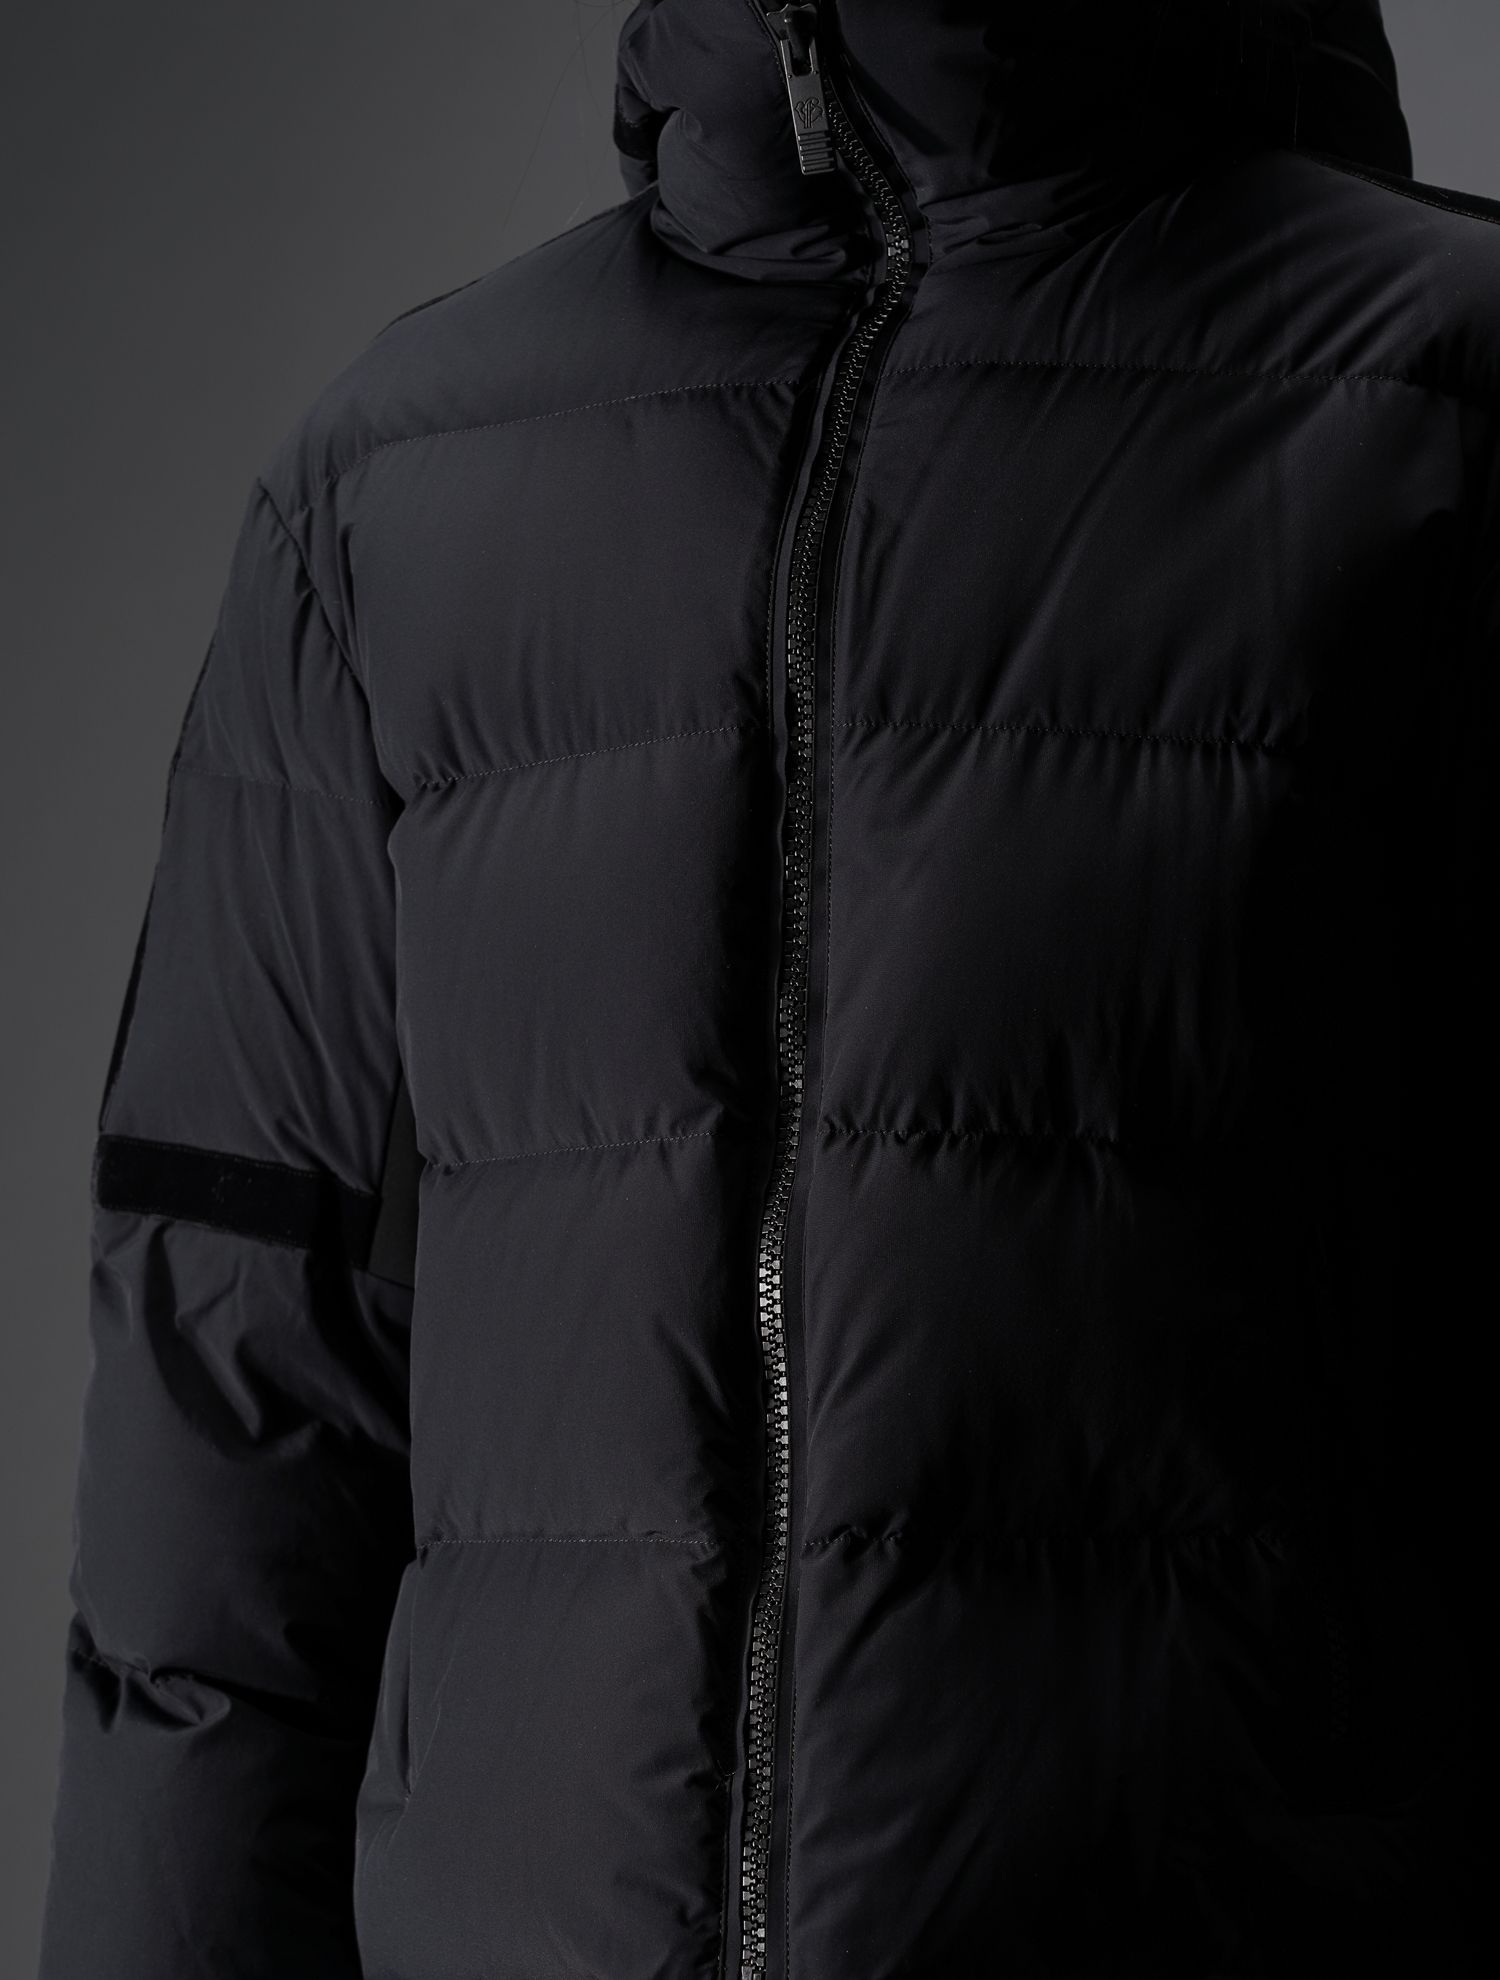 Bars jacket : Women ski jacket with short and oversized cut